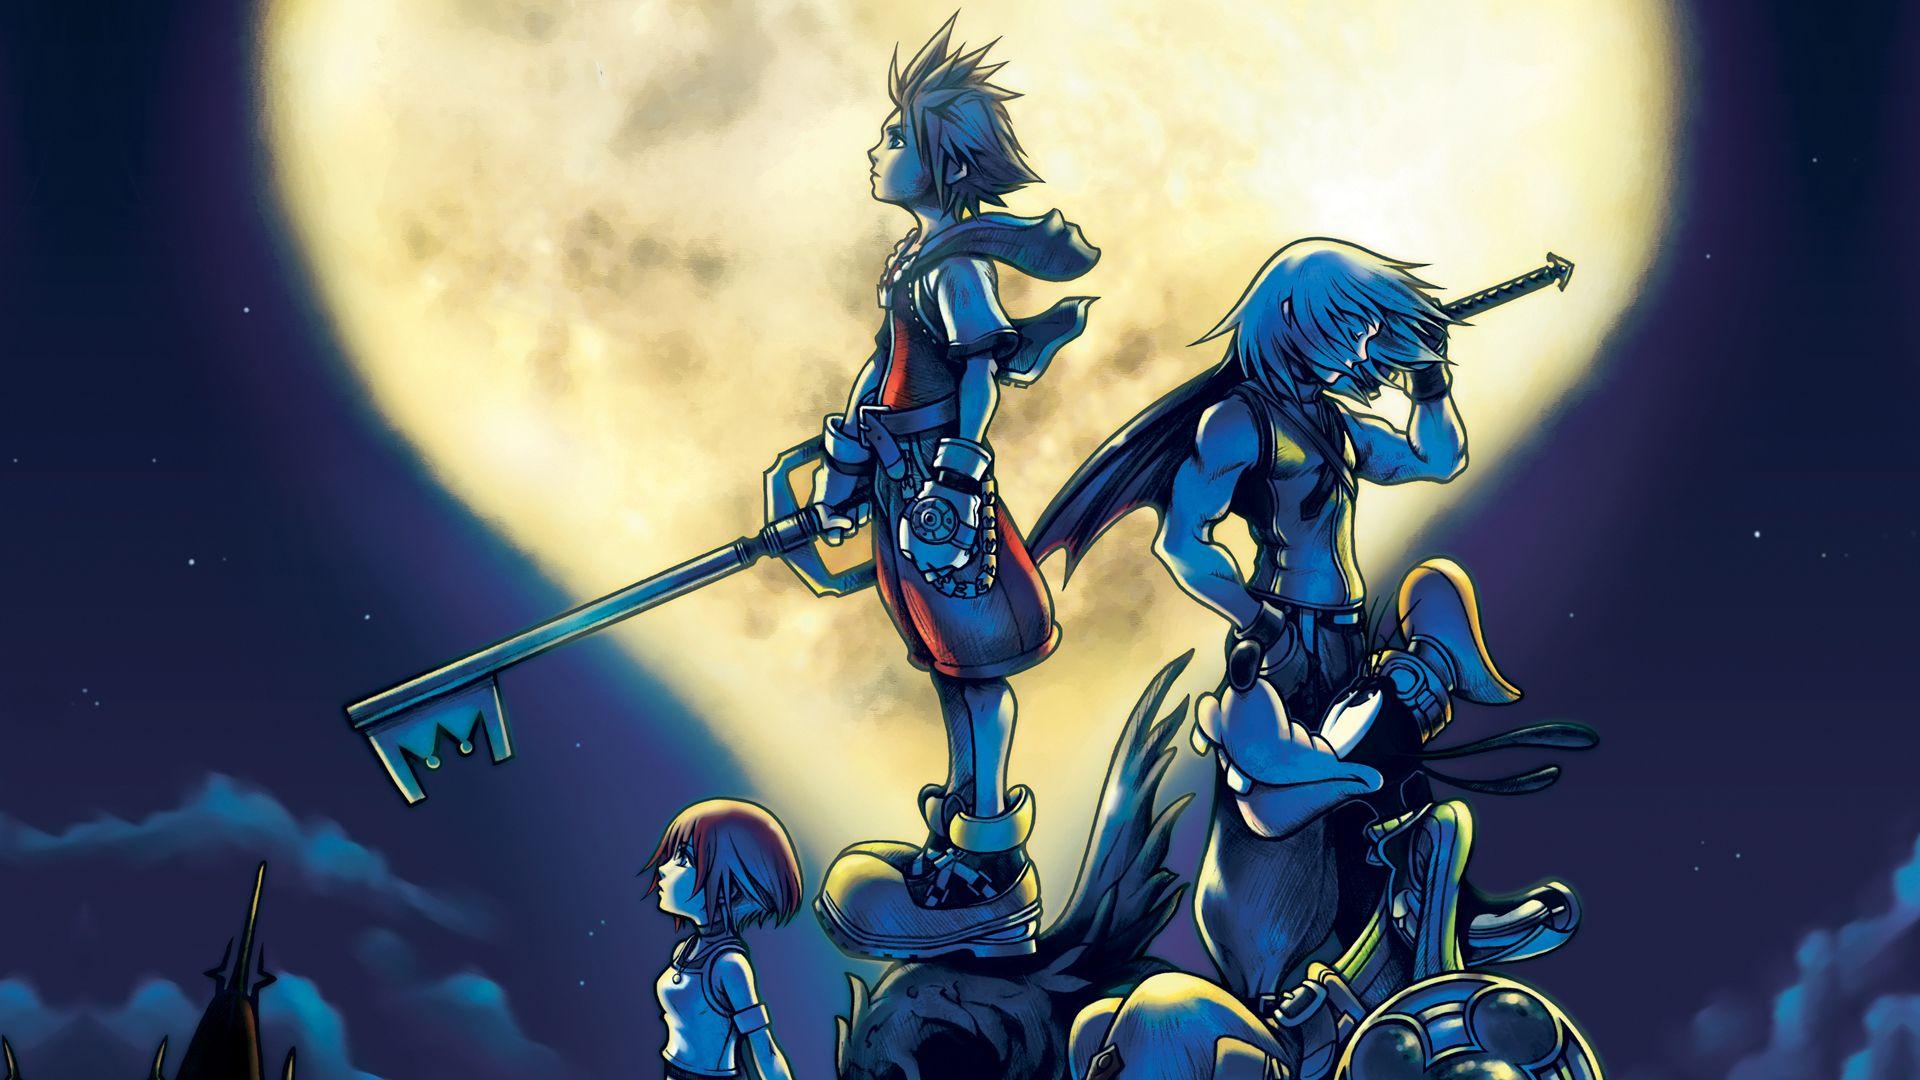 1920x1080 Tải xuống miễn phí hình nền HD Hình nền Kingdom Hearts HD [1920x1080] cho Máy tính để bàn, Di động & Máy tính bảng của bạn.  Khám phá Hình nền Kingdom Hearts Miễn phí.  Hình nền Kingdom Hearts miễn phí, Hình nền Kingdom Hearts, Hình nền Kingdom Hearts